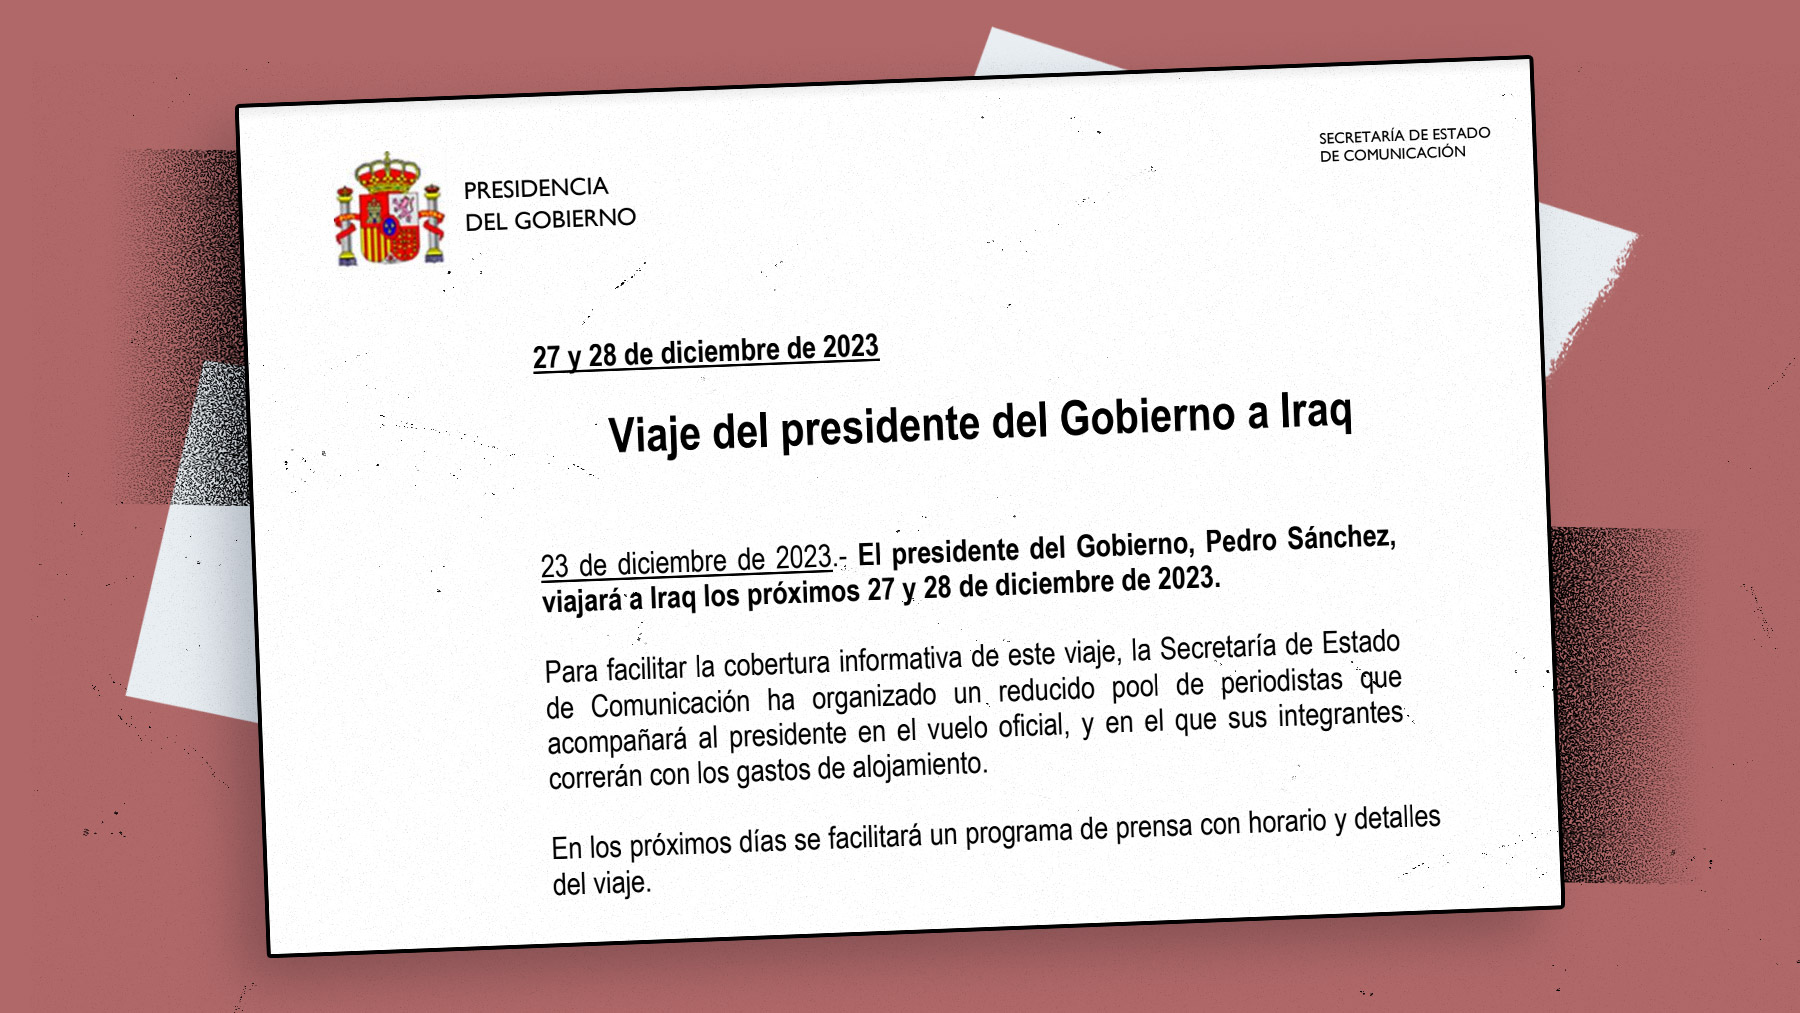 Nota de prensa que Moncloa ha enviado tras haber seleccionado previamente a los periodistas que irán junto a Sánchez a Irak.